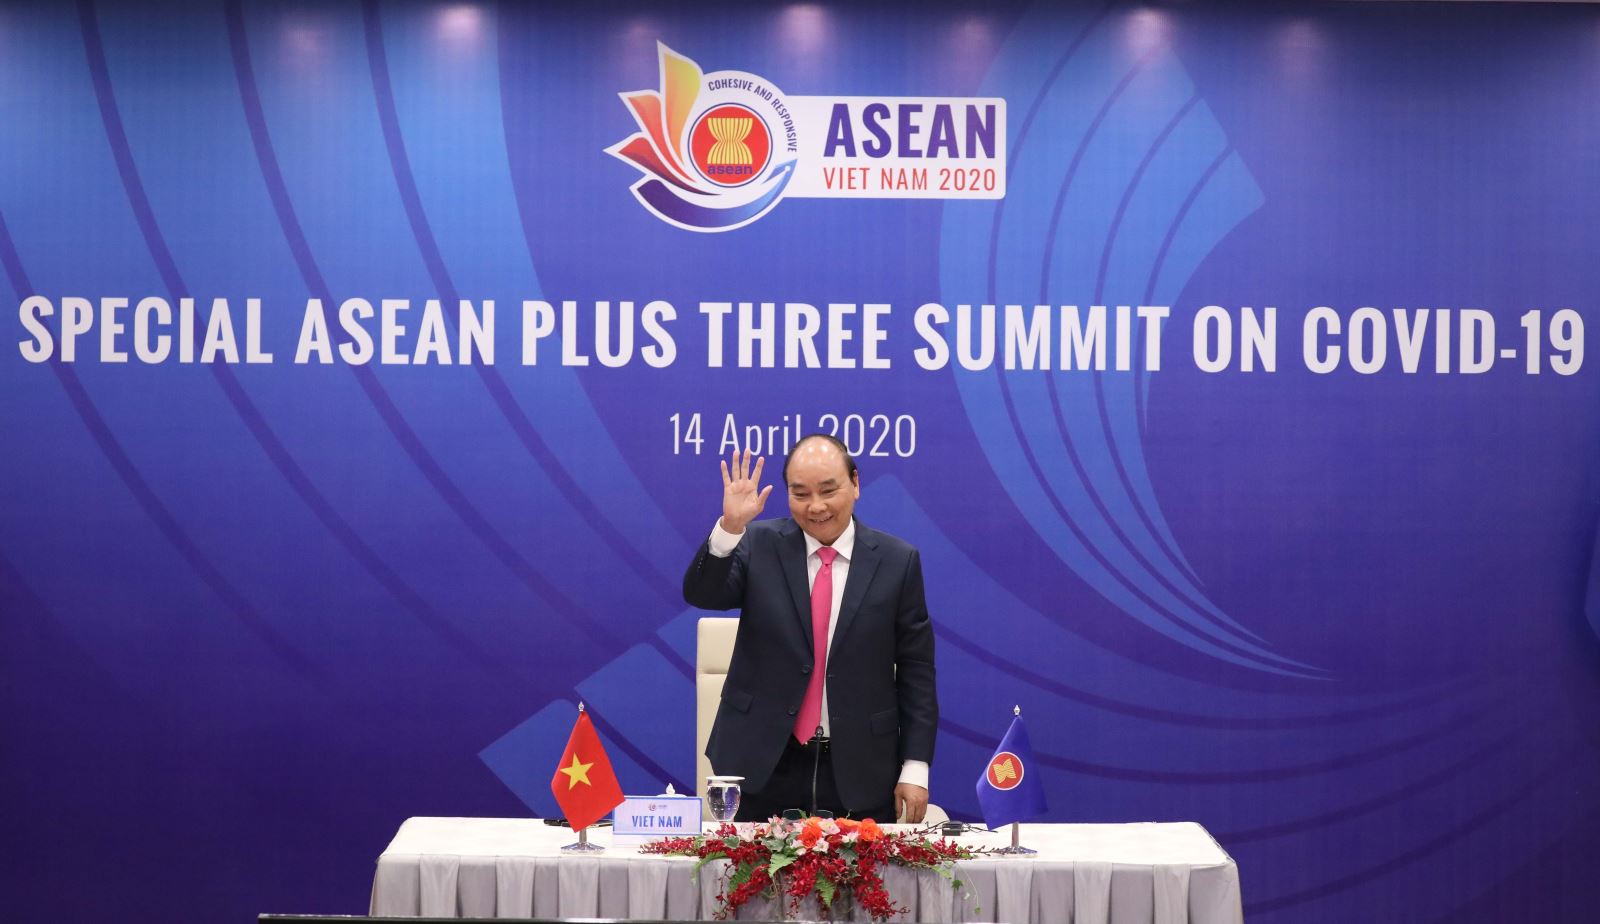 Thủ tướng Nguyễn Xuân Phúc, Chủ tịch ASEAN 2020 chủ trì Hội nghị Cấp cao đặc biệt trực tuyến ASEAN với các đối tác Hàn Quốc, Nhật Bản và Trung Quốc (ASEAN+3) về ứng phó với dịch bệnh Covid-19. Ảnh: Thống Nhất – TTXVN